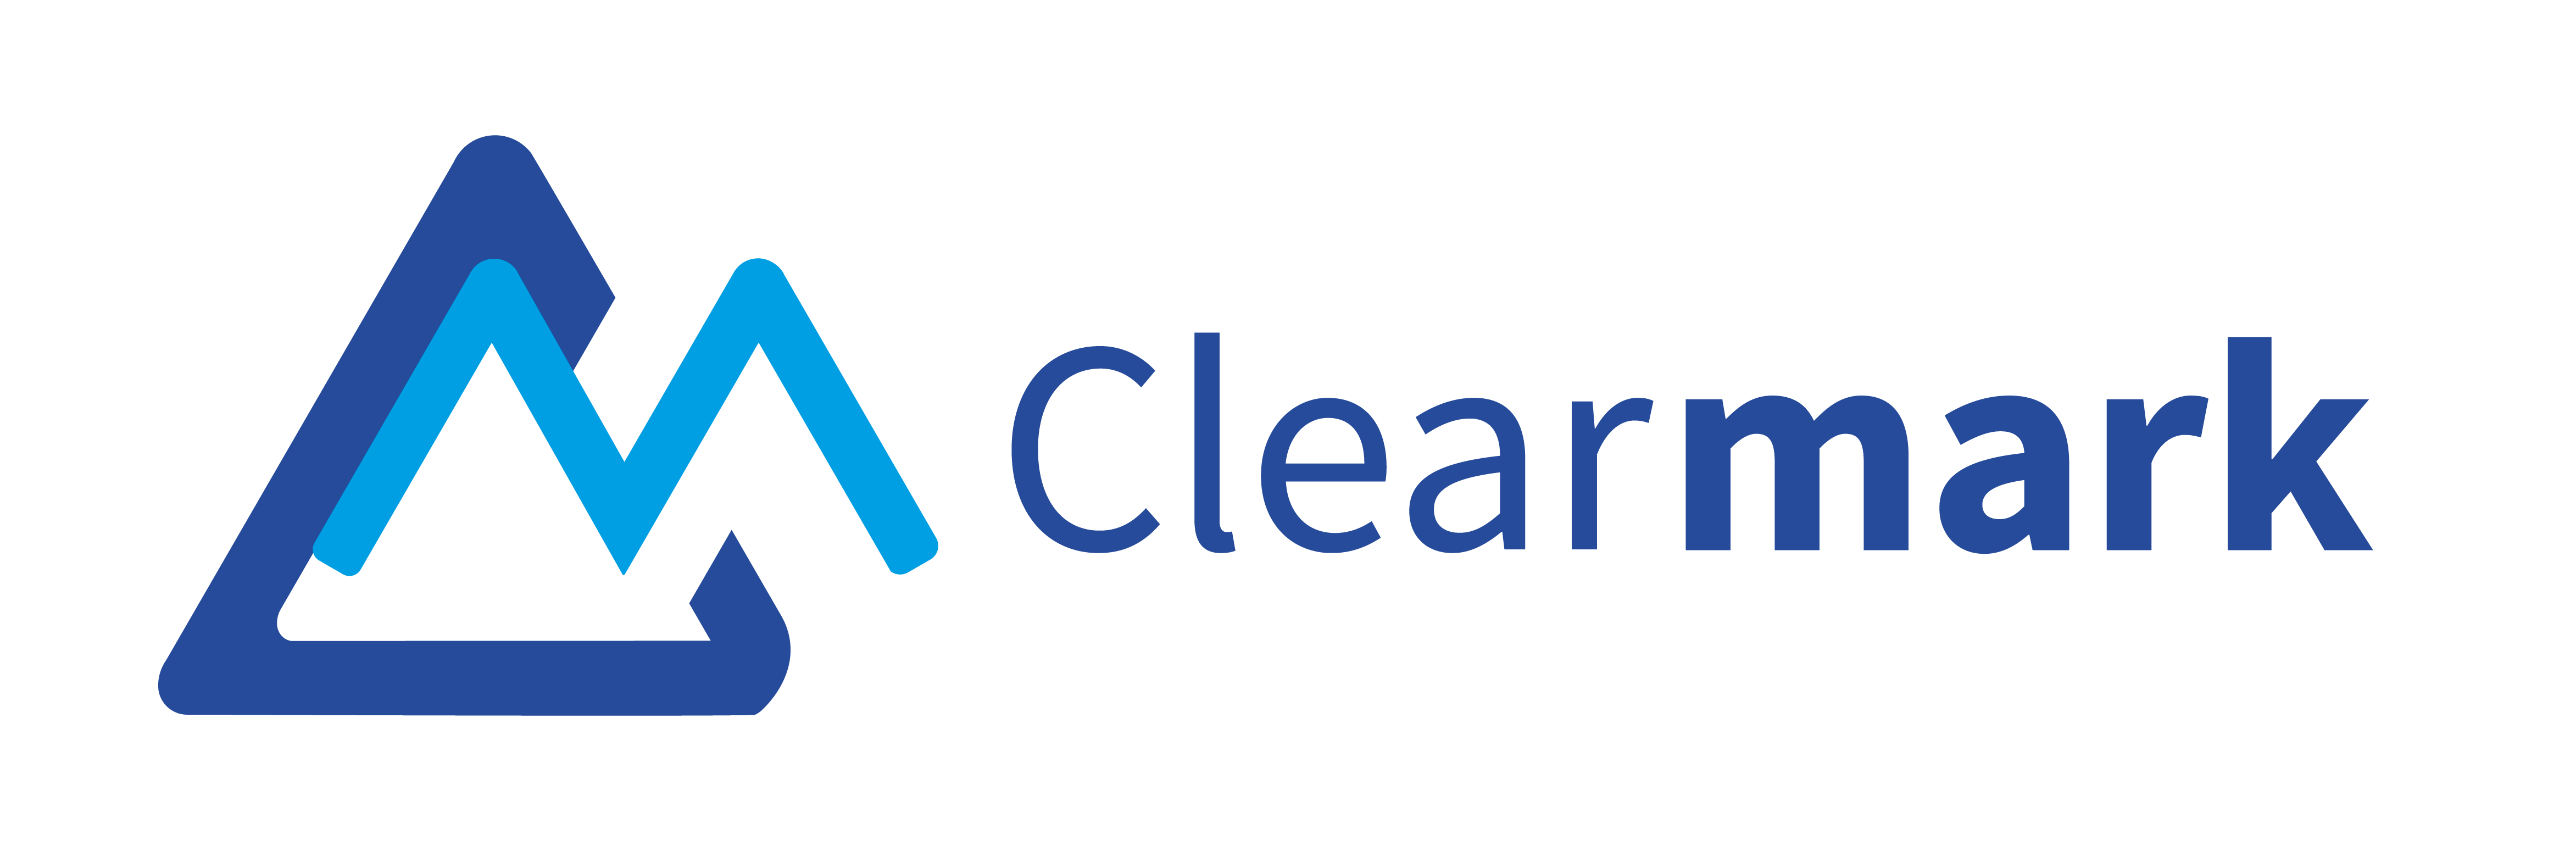 Clearmark-logo